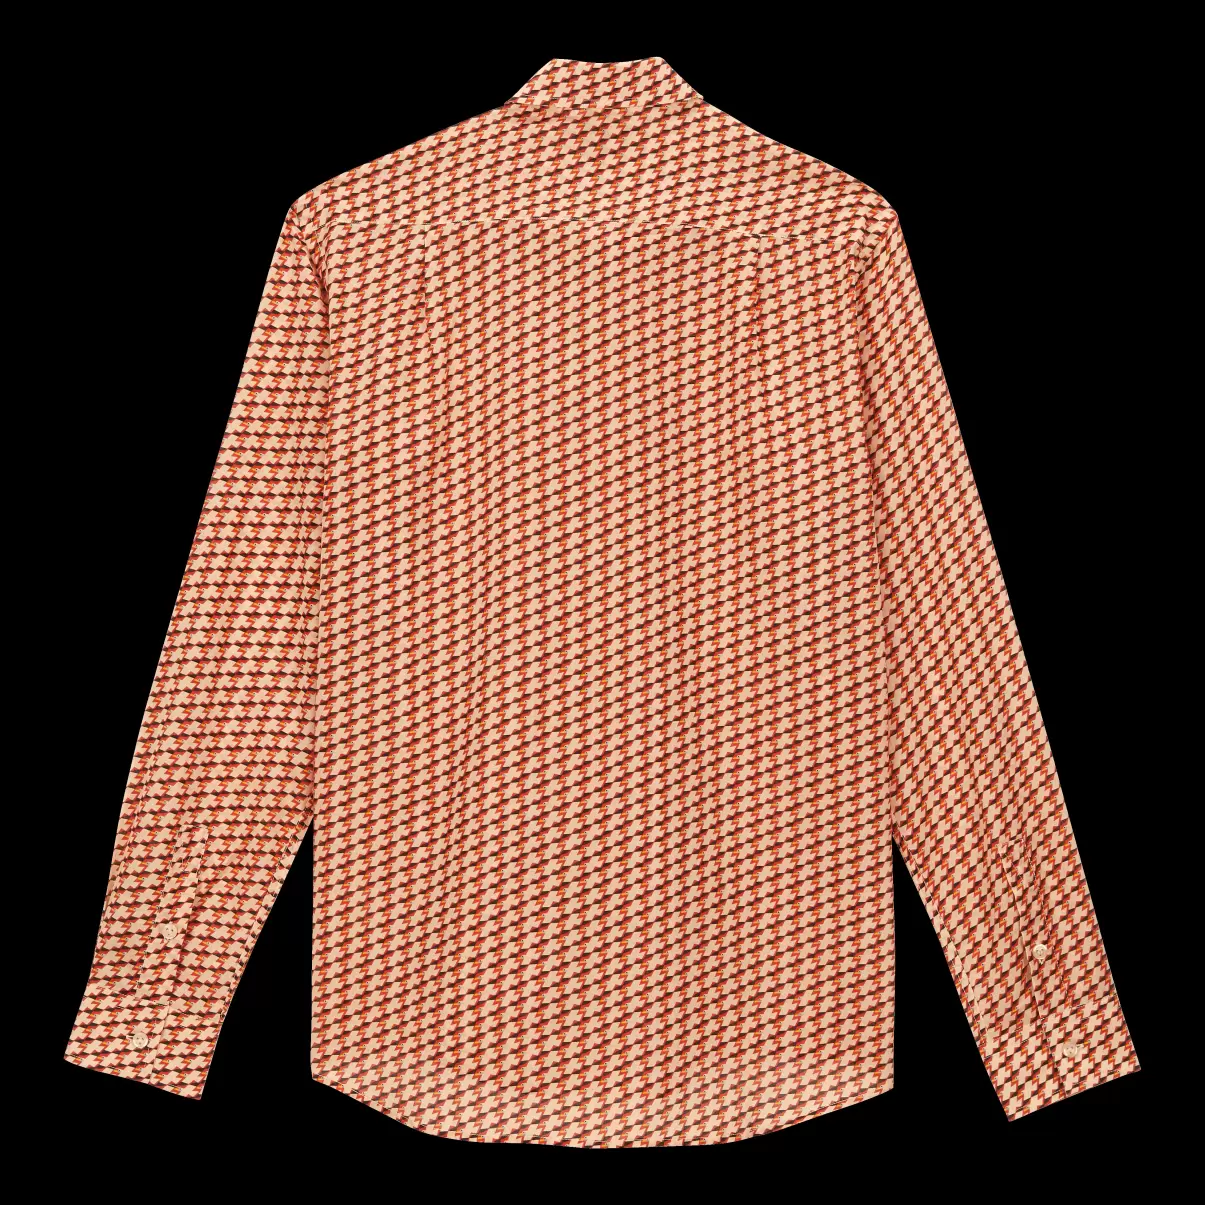 Herren Leichtes Micro Mouettes Unisex-Hemd Aus Baumwollvoile Vilebrequin Bestellung Shirts Straw / Gelb - 4